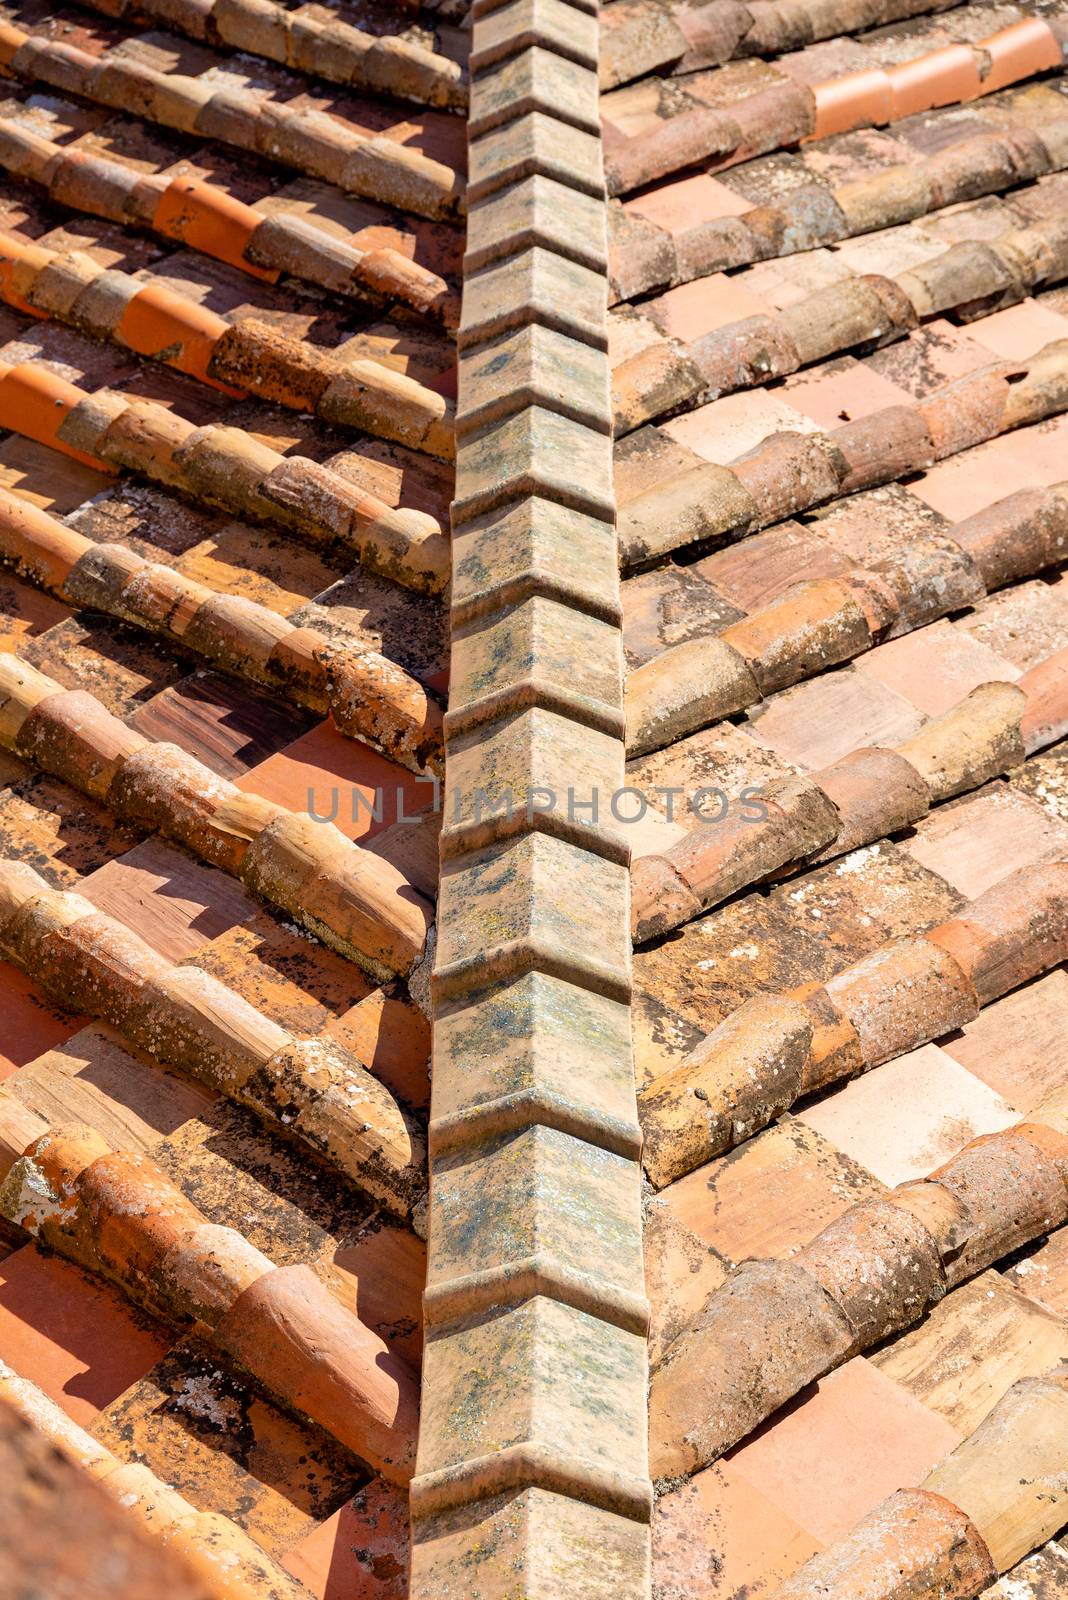 Sample tiled roof by Guinness